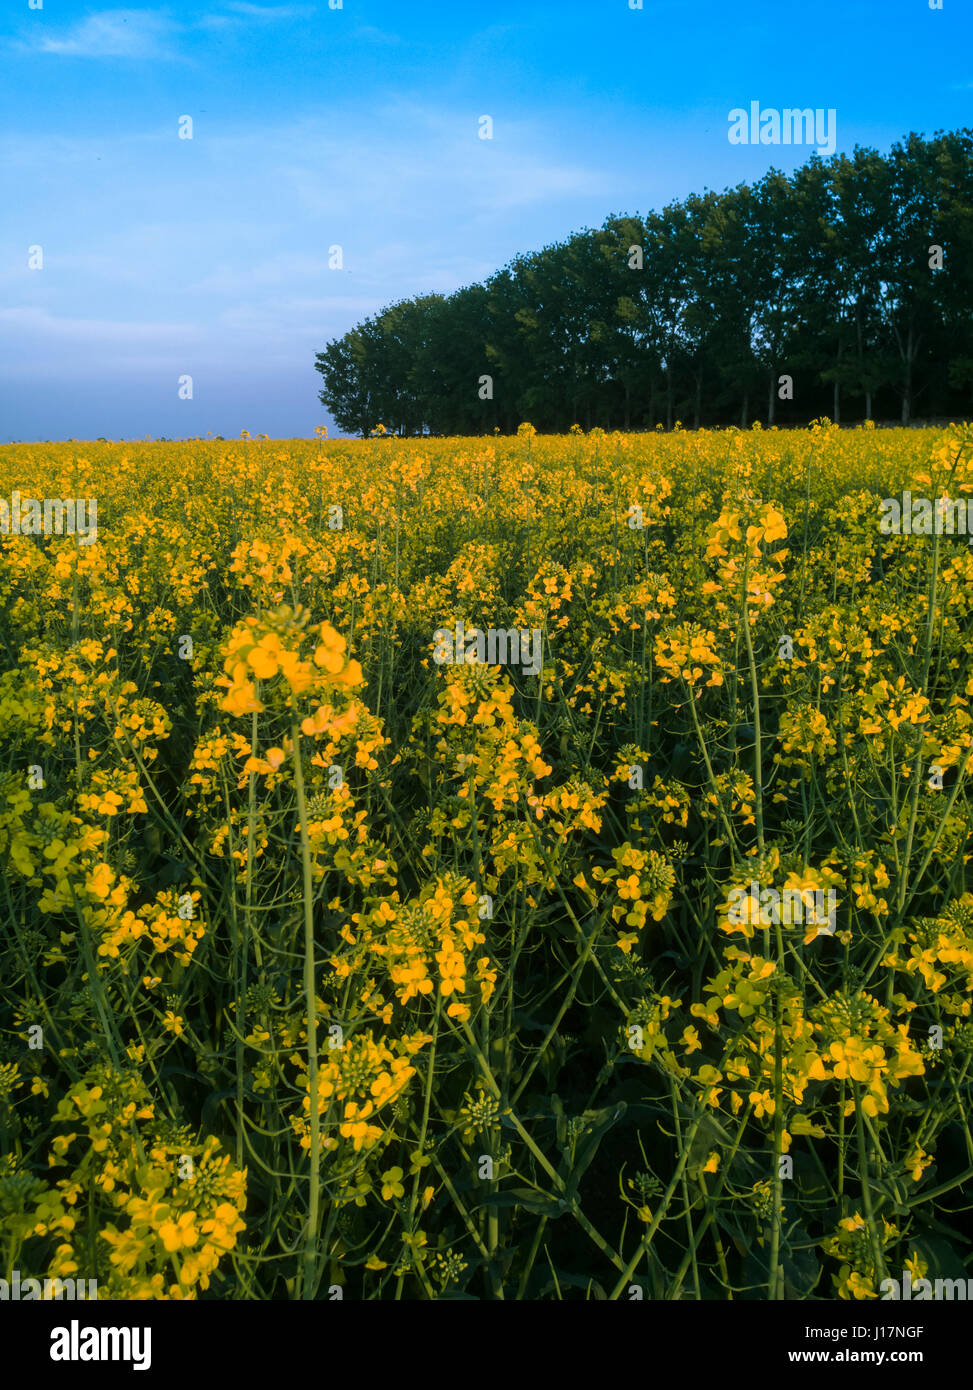 Rape field in bloom Stock Photo